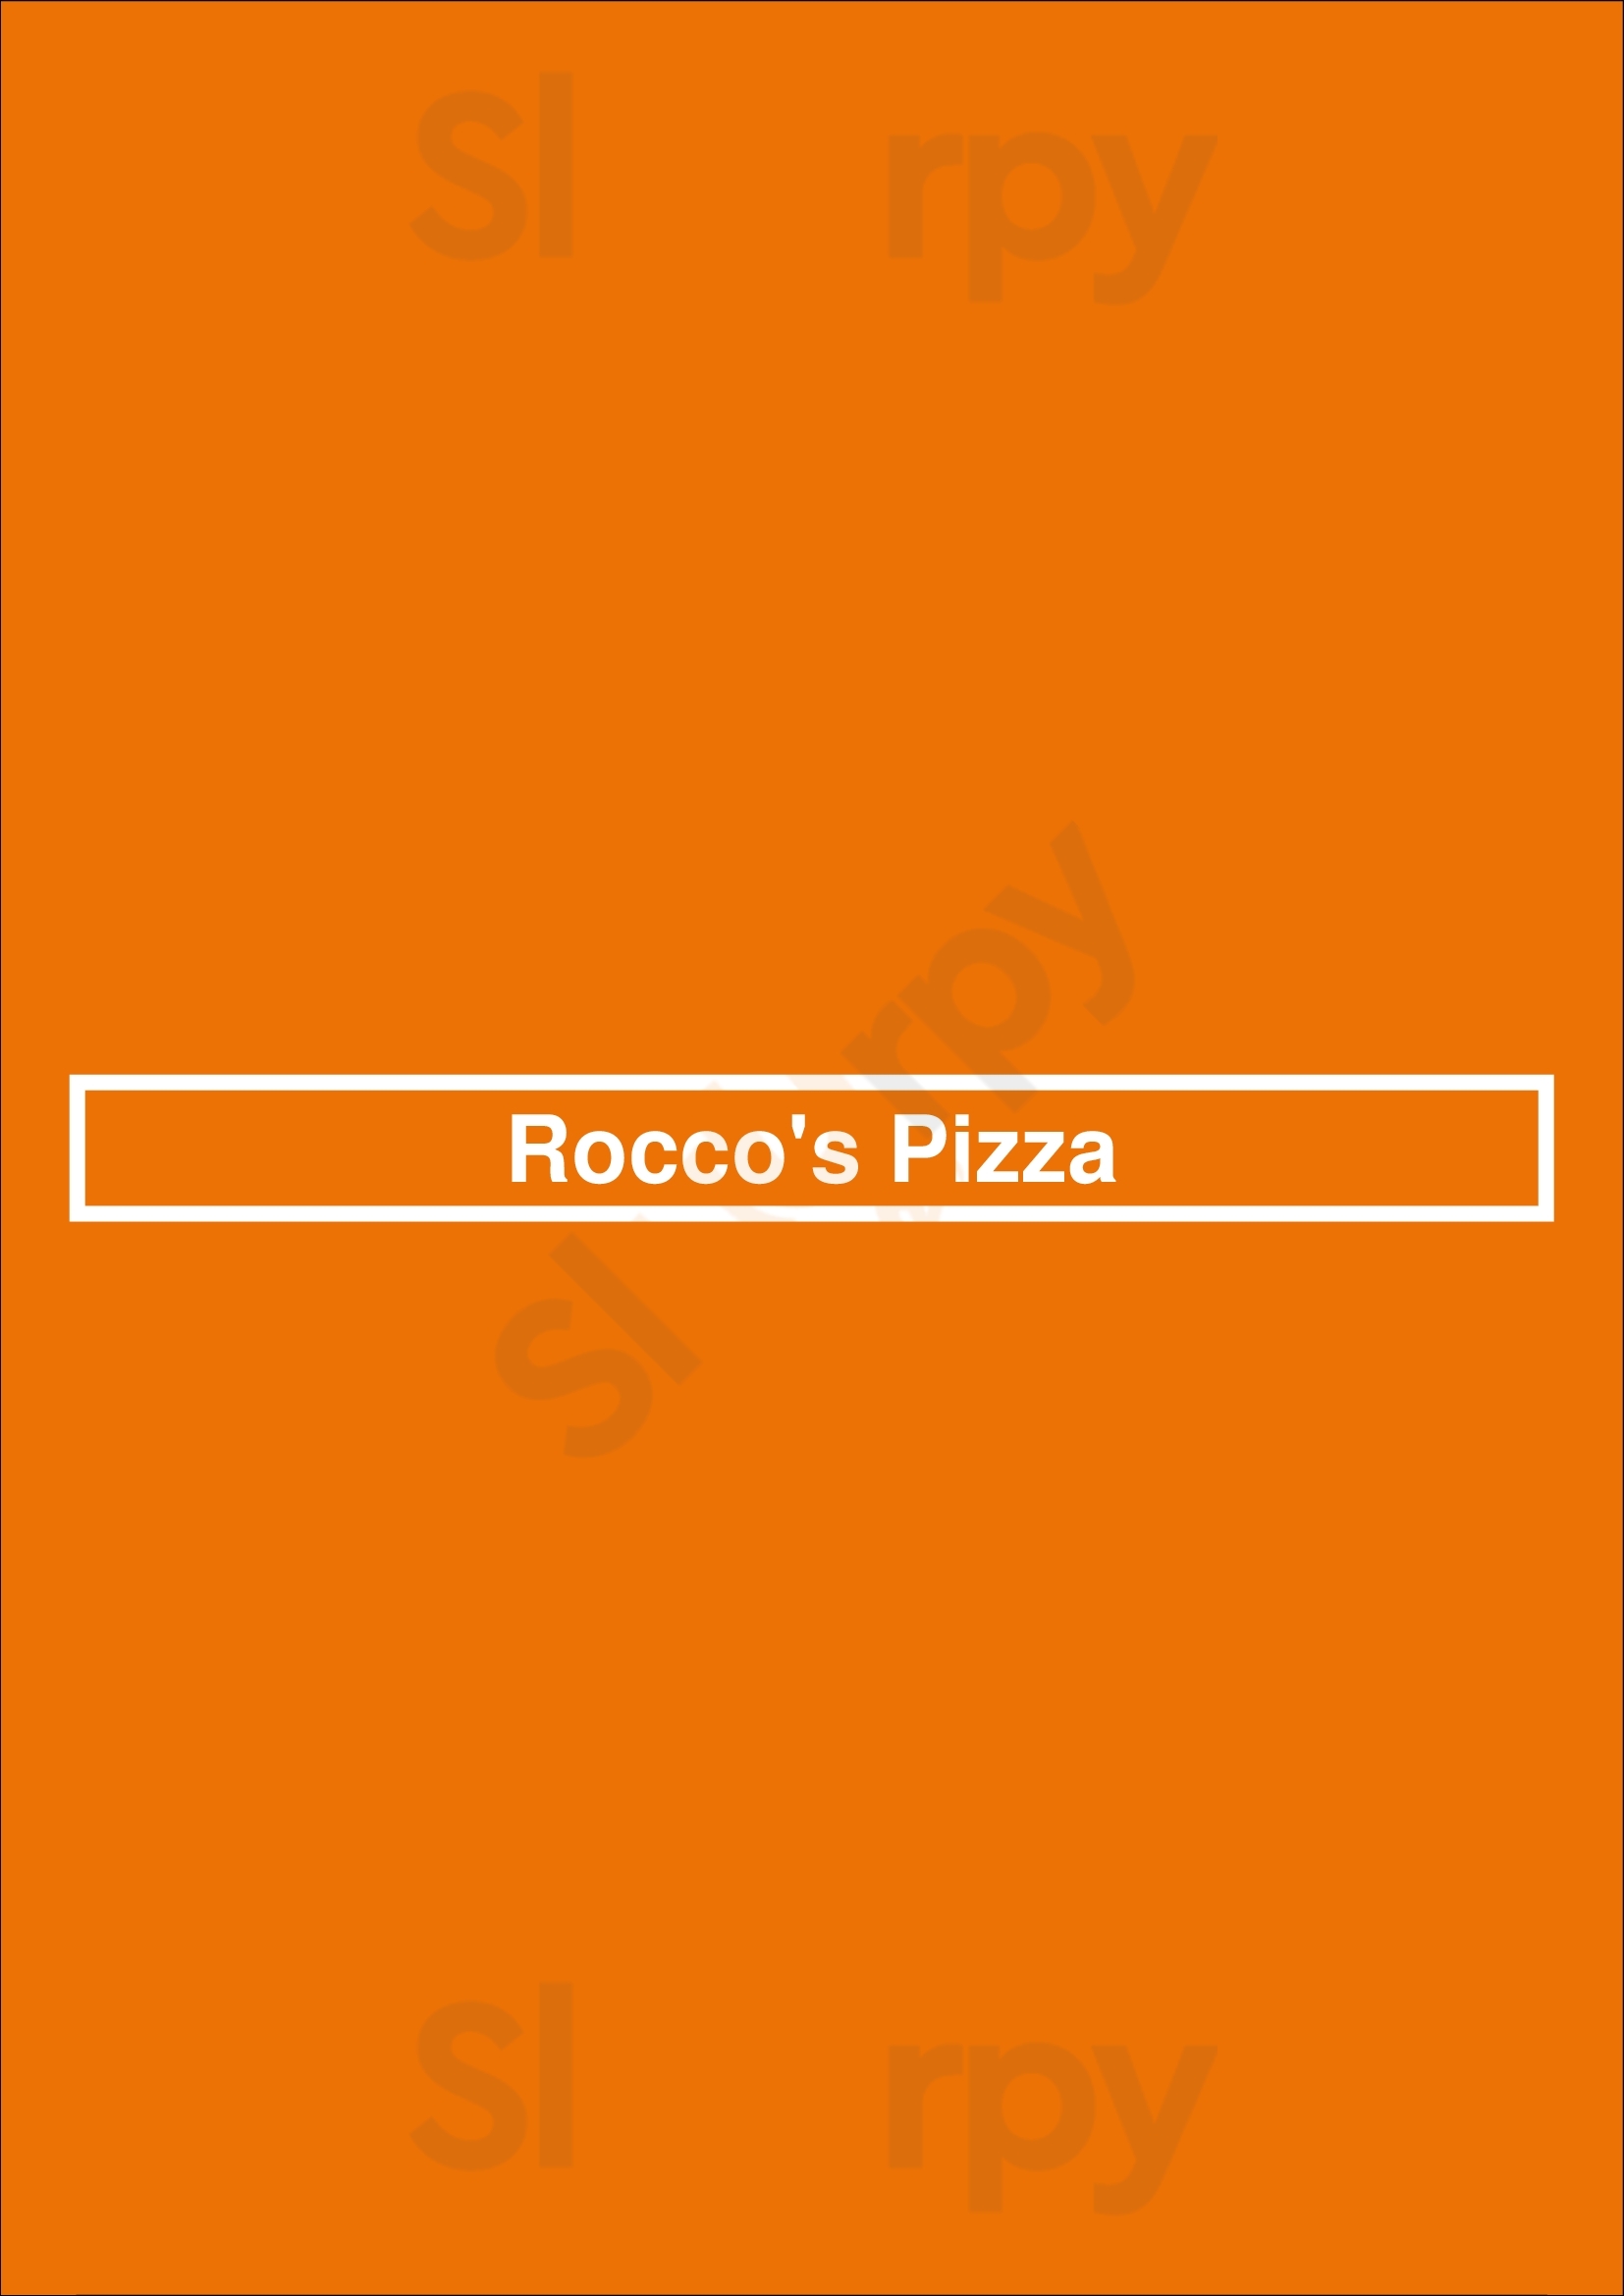 Rocco's Pizza Los Angeles Menu - 1